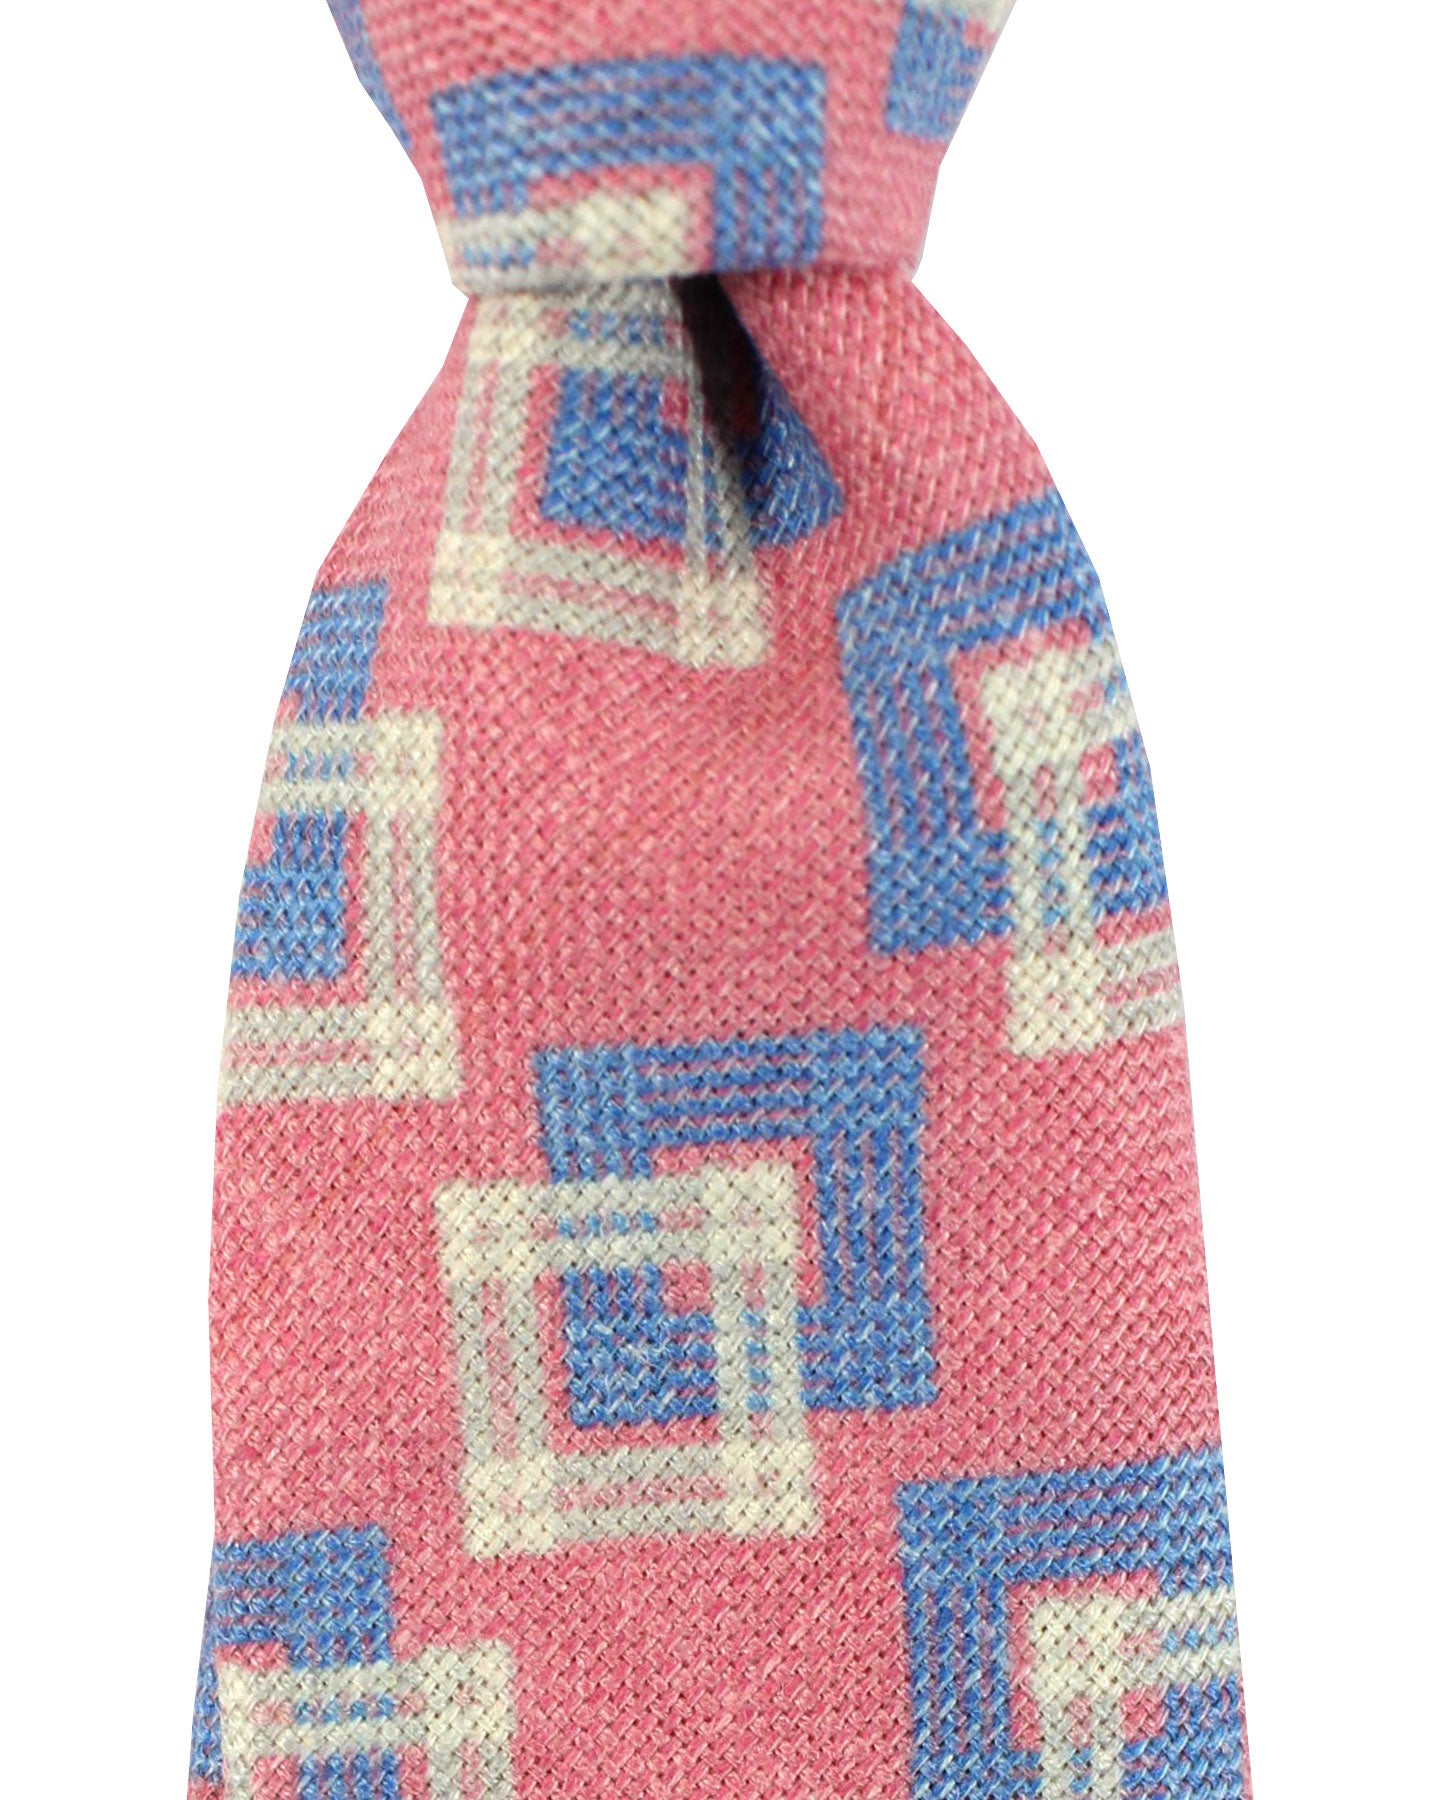 Kiton Tie Pink Plaid Design - Sevenfold Necktie